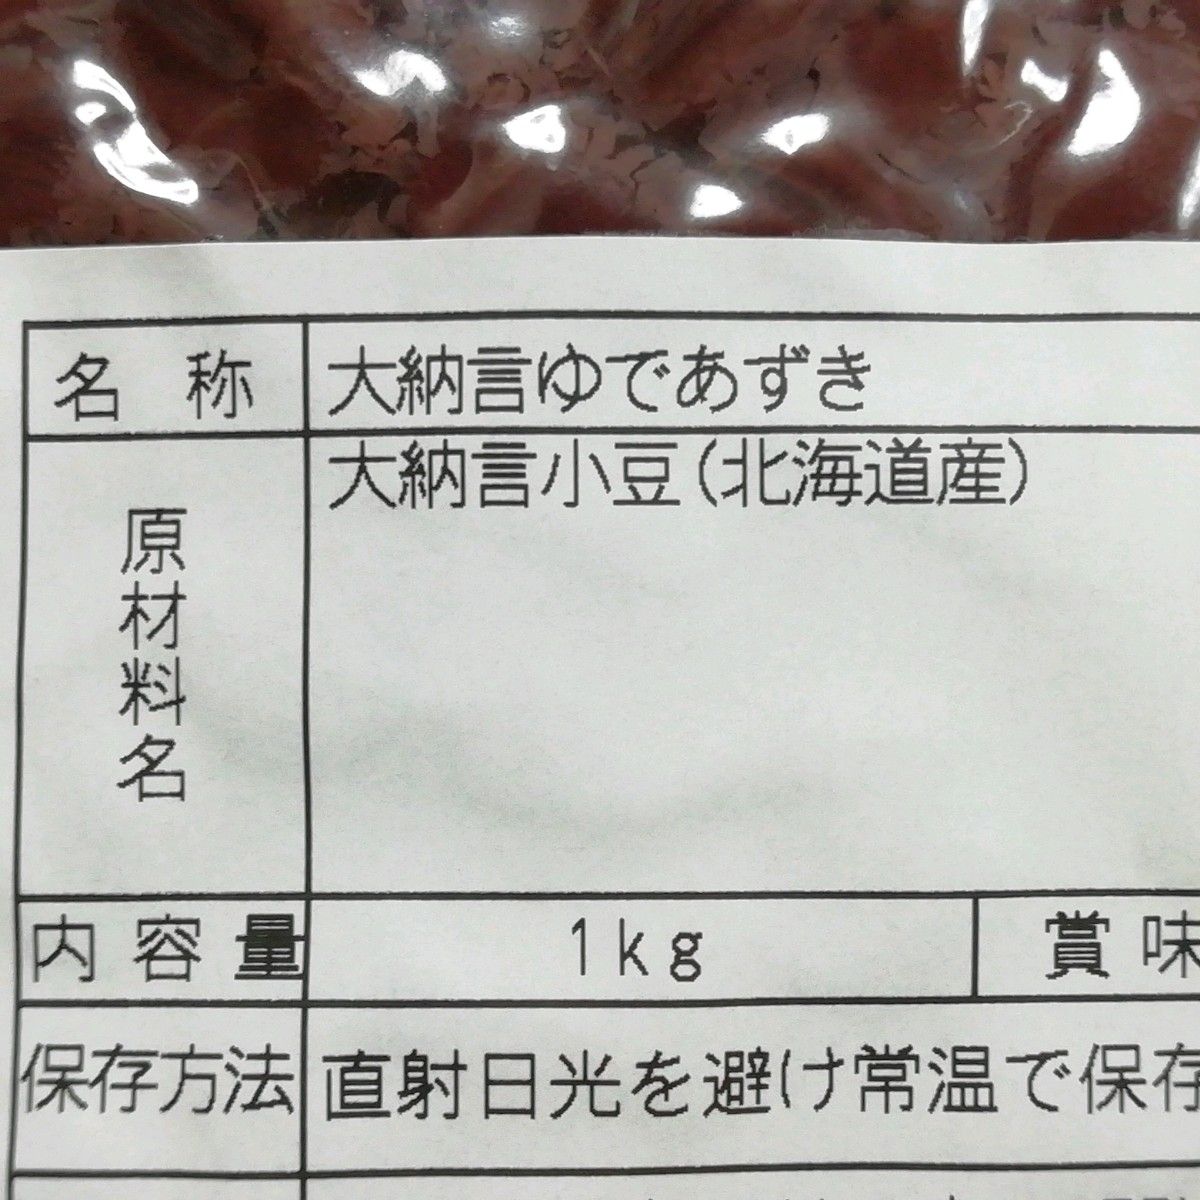 北海道産 大納言 小豆 ゆであずき 砂糖不使用 無添加 無化学調味料 化学調味料不使用